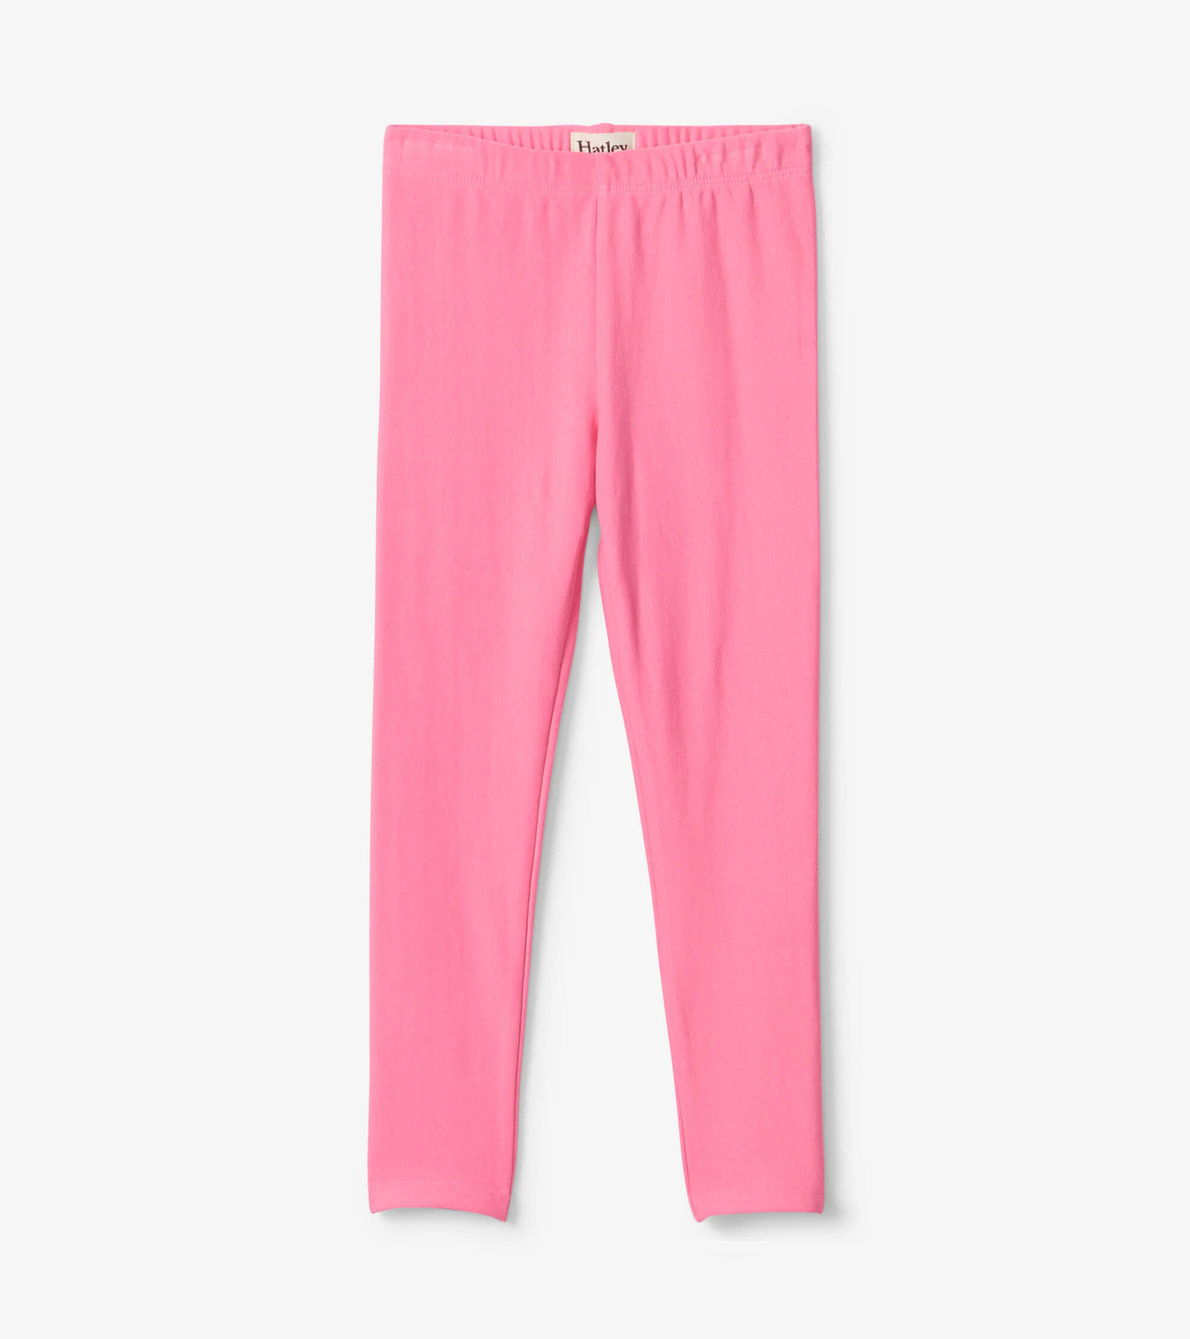 View larger image of Girls Pink Cozy Leggings